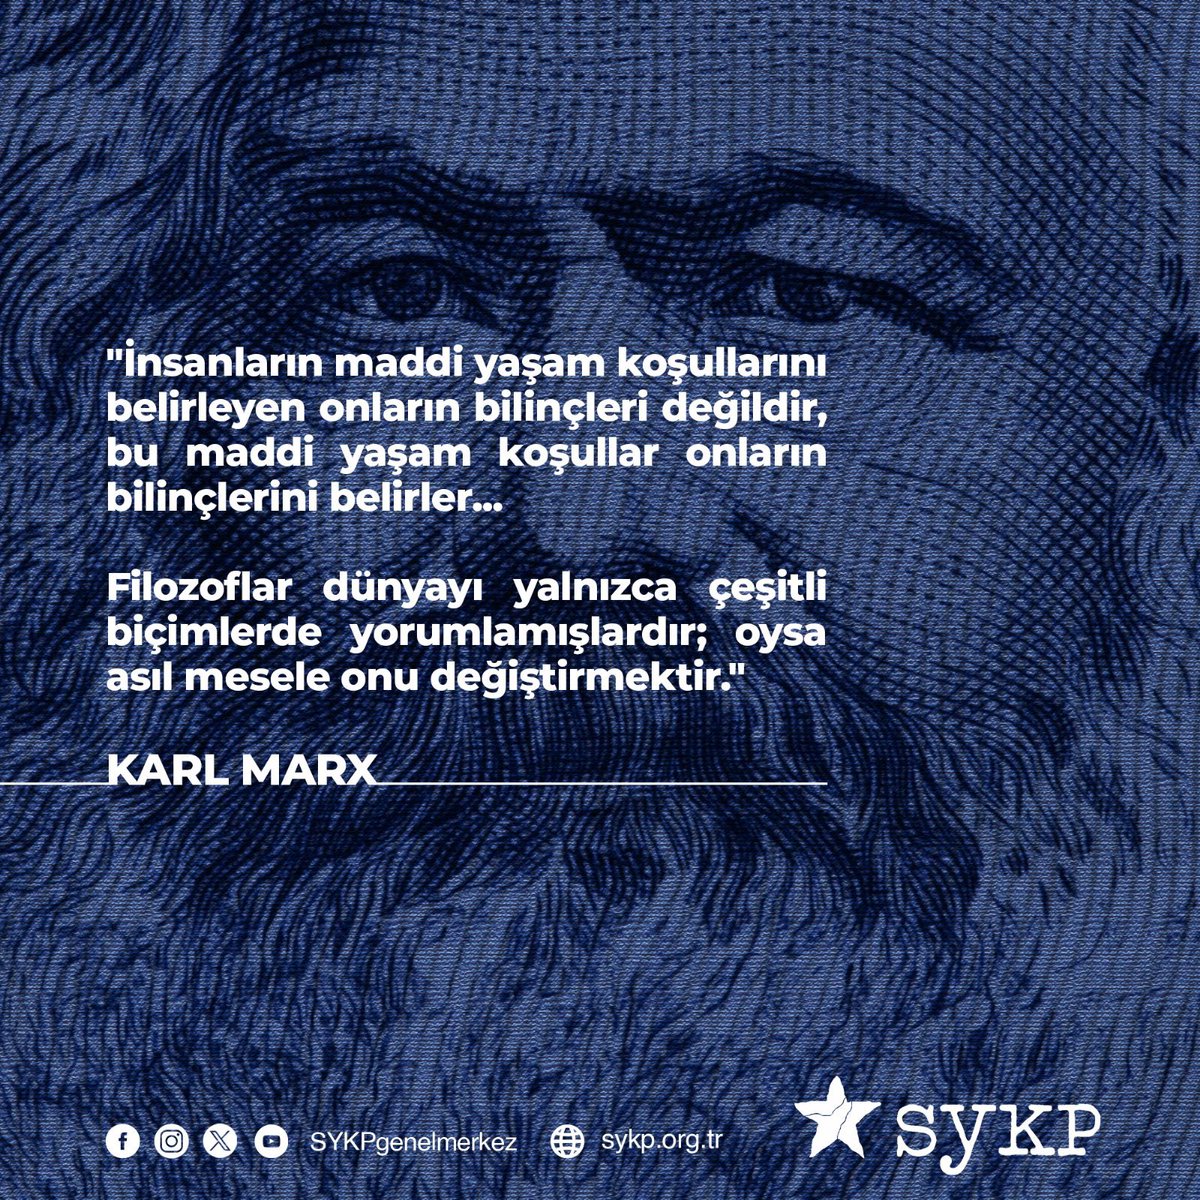 Felaket kapitalizminin her tıkanma anında başka bir dünya fikri bir kez daha parıldayan Karl Marx’ın fiziken aramızdan ayrılışının üzerinden 141 yıl geçti. Bilimsel Sosyalizmin kurucusu #KarlMarx 14 Mart 1883’te Londra’da öldü. Ancak fikirleri İstanbul’da, Amed’de, Berlin’de,…